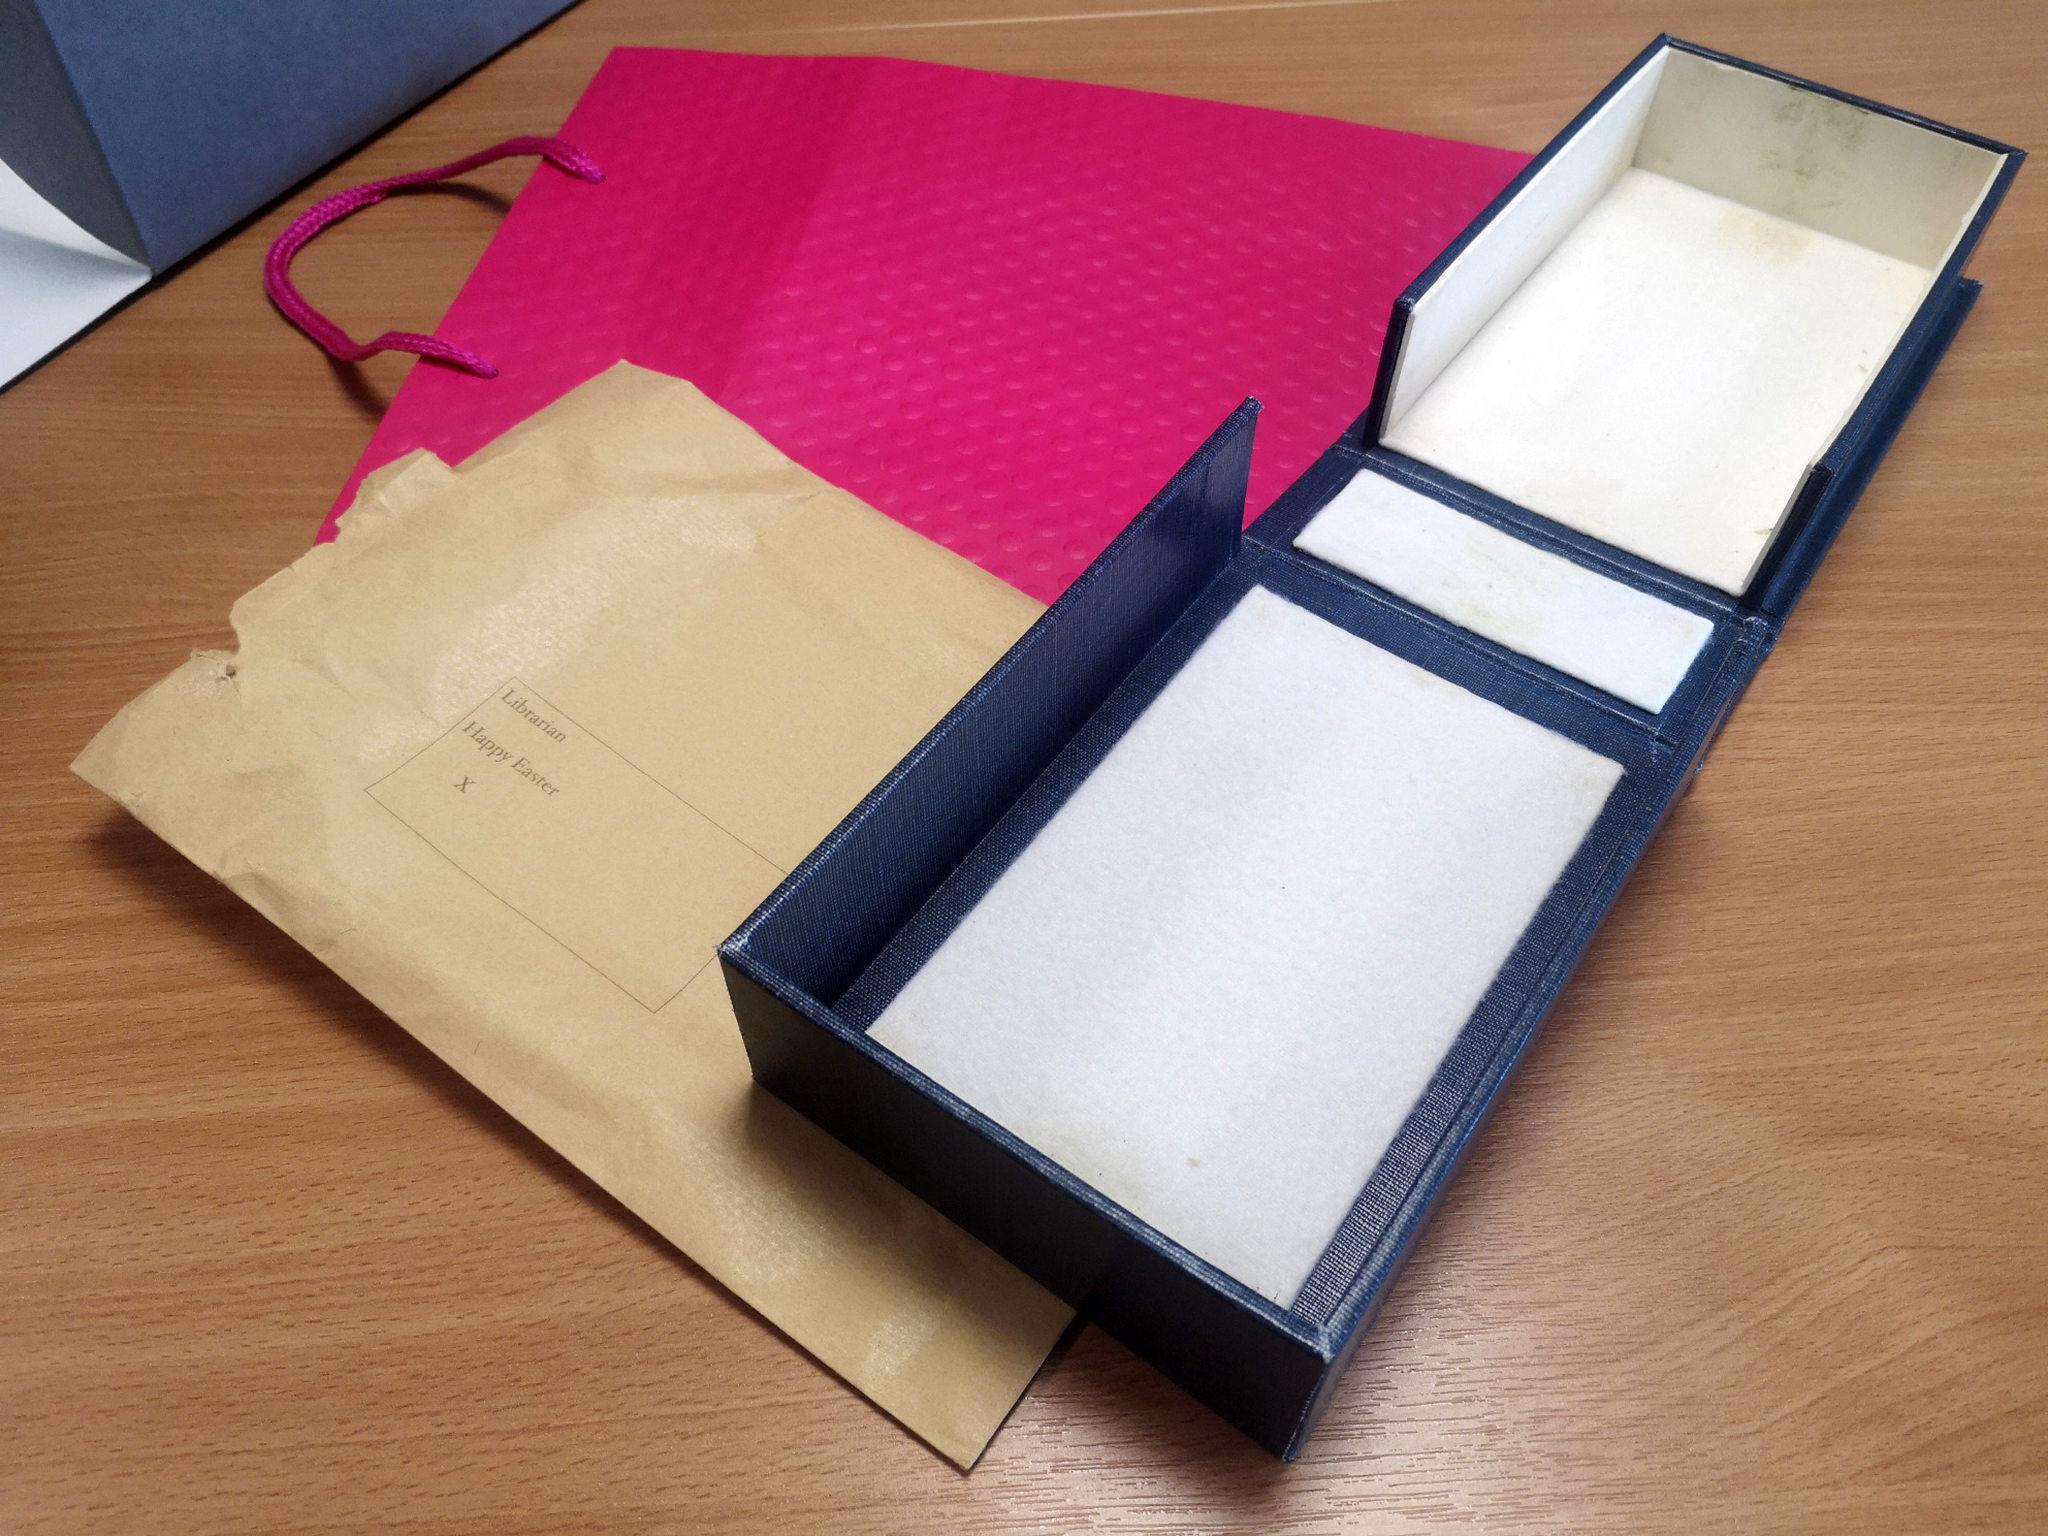 Imagem mostra a bolsa de presente rosa e o envelope endereçado ao 'Bibliotecário da Universidade' onde os cadernos perdidos do cientista britânico Charles Darwin foram devolvidos dentro